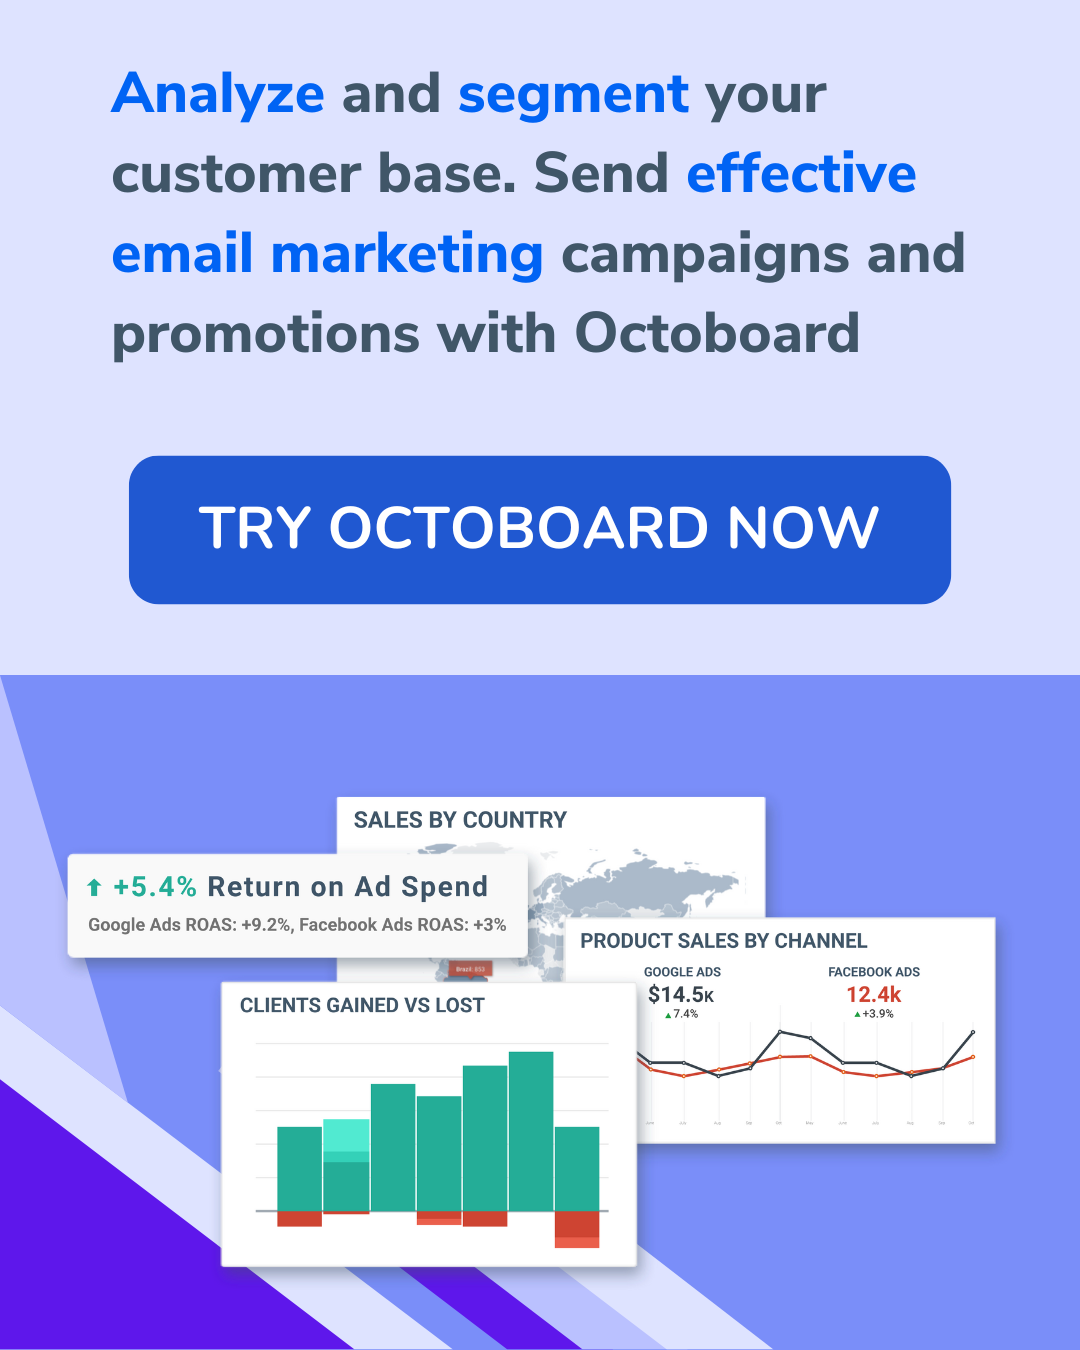 Analiza y segmenta tu base de clientes. Envía campañas de marketing por correo electrónico y promociones efectivas con Octoboard.